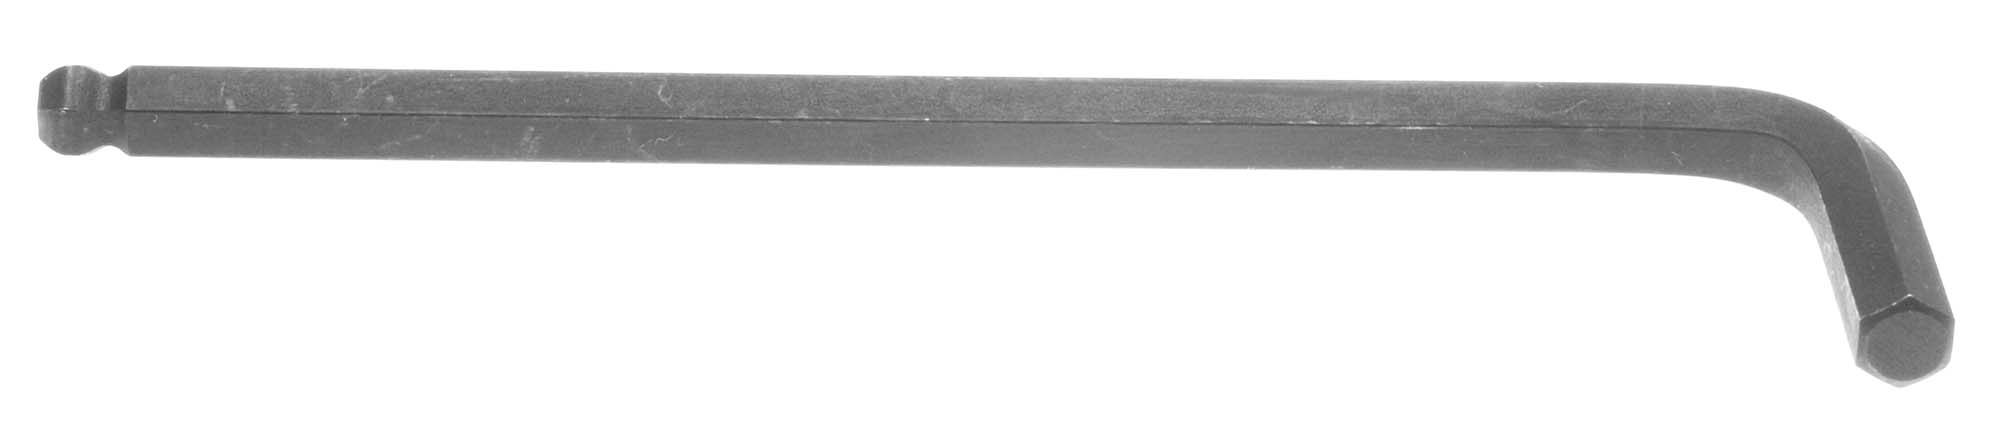 7/64" Bondhus Balldriver L-Wrench Hex Key